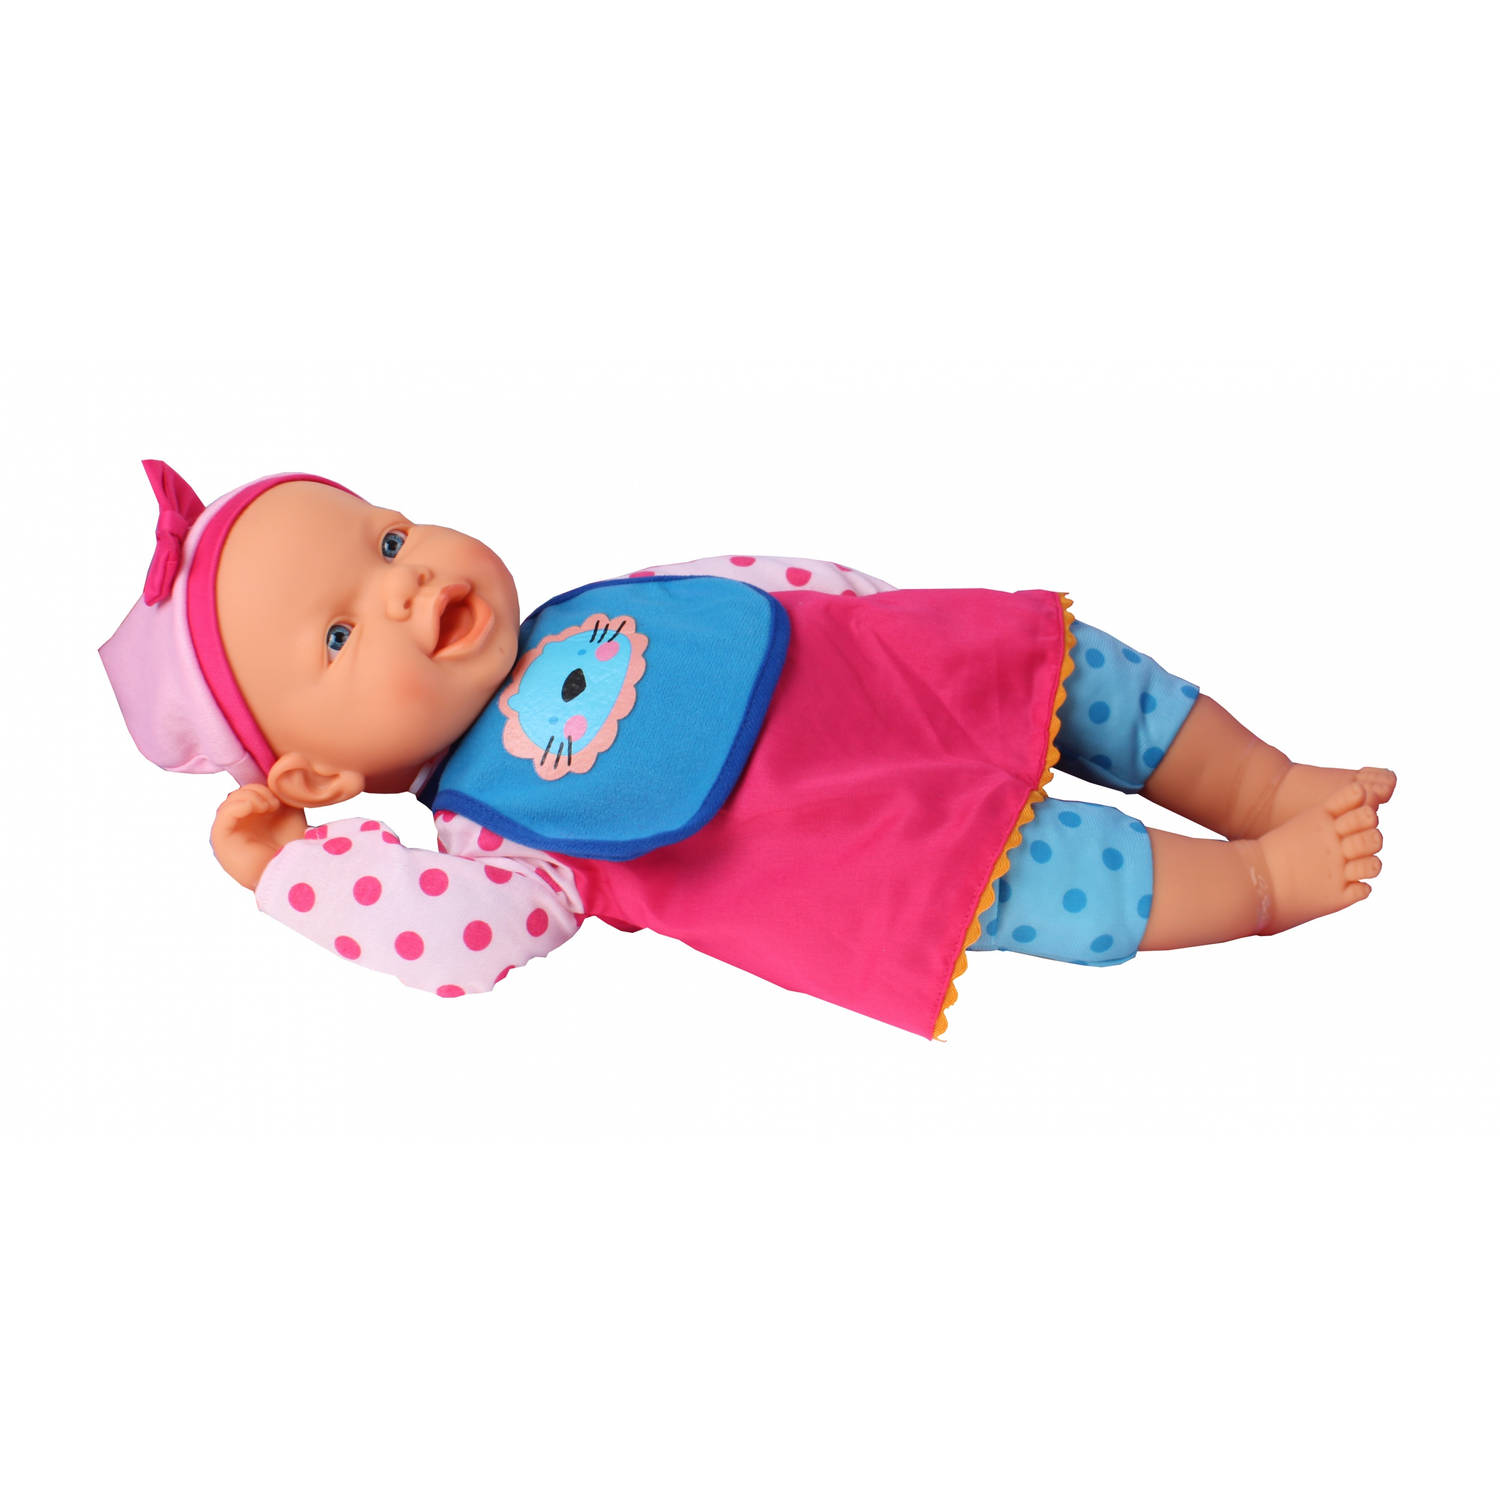 Falca babypop 8 delig meisje blauw-roze 45 cm